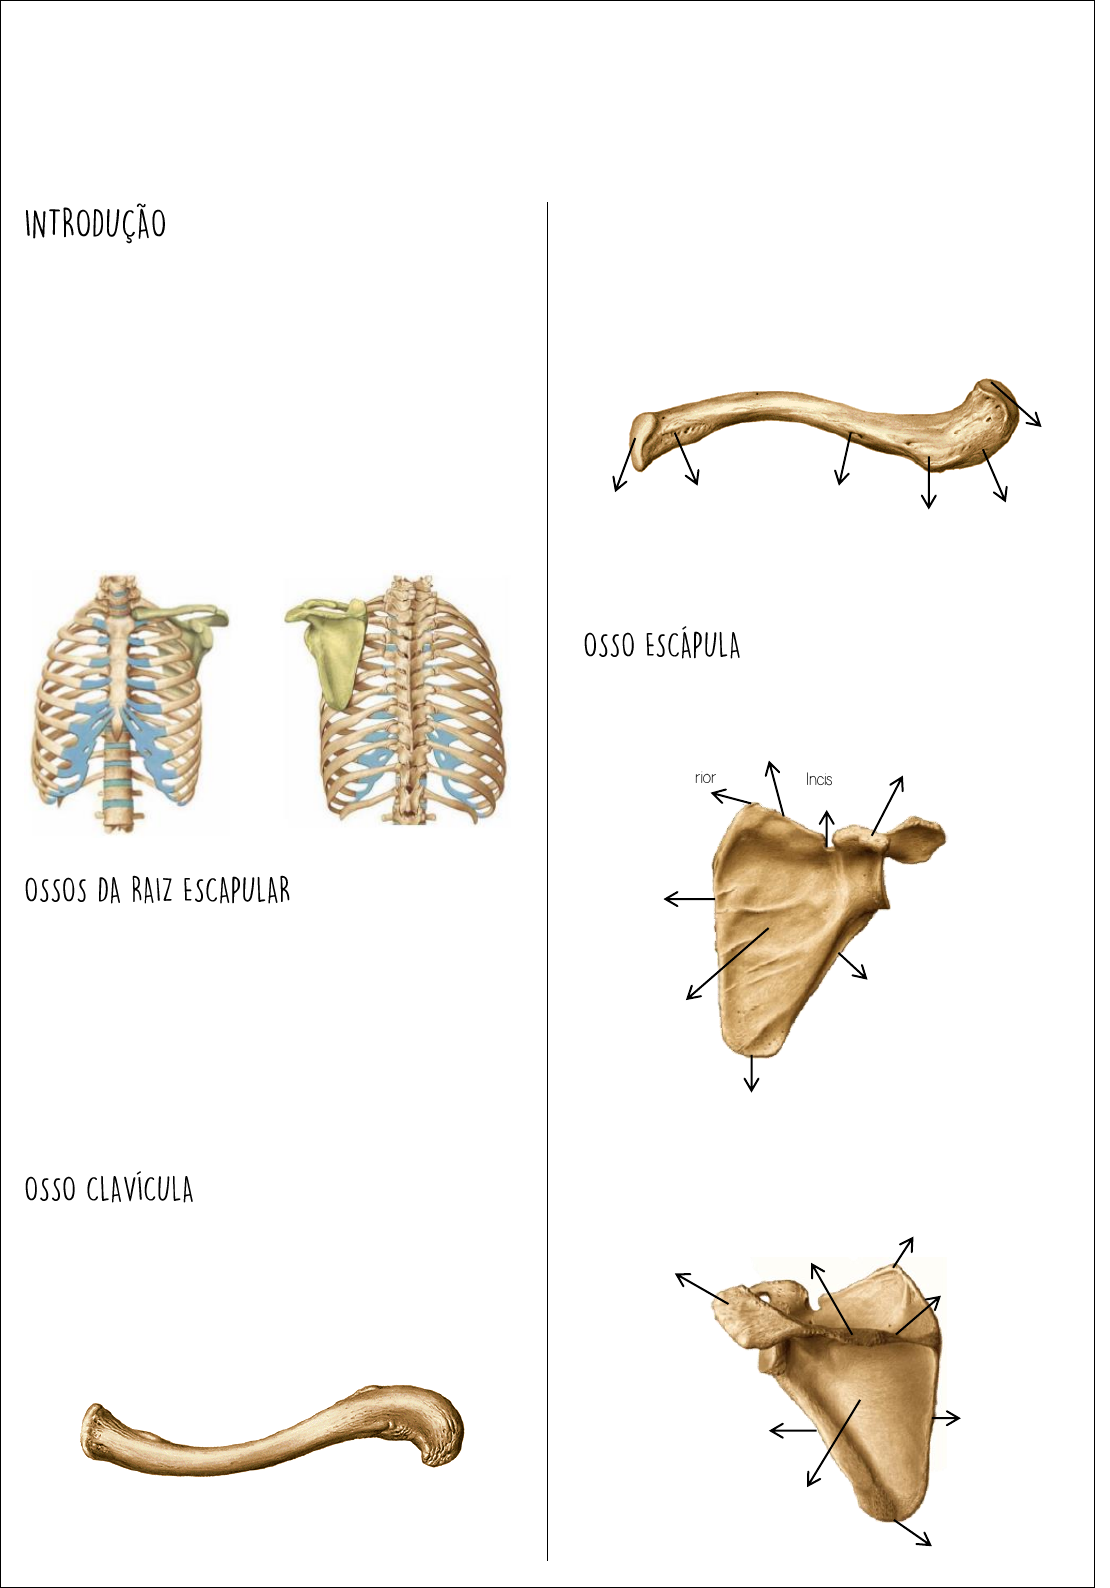 Educação Física 2.0 - A cintura escapular é composta pelos 2 pares de ossos  da escápula e da clavícula, ou seja, é o conjunto de ossos que conecta os  ombros ao tronco.